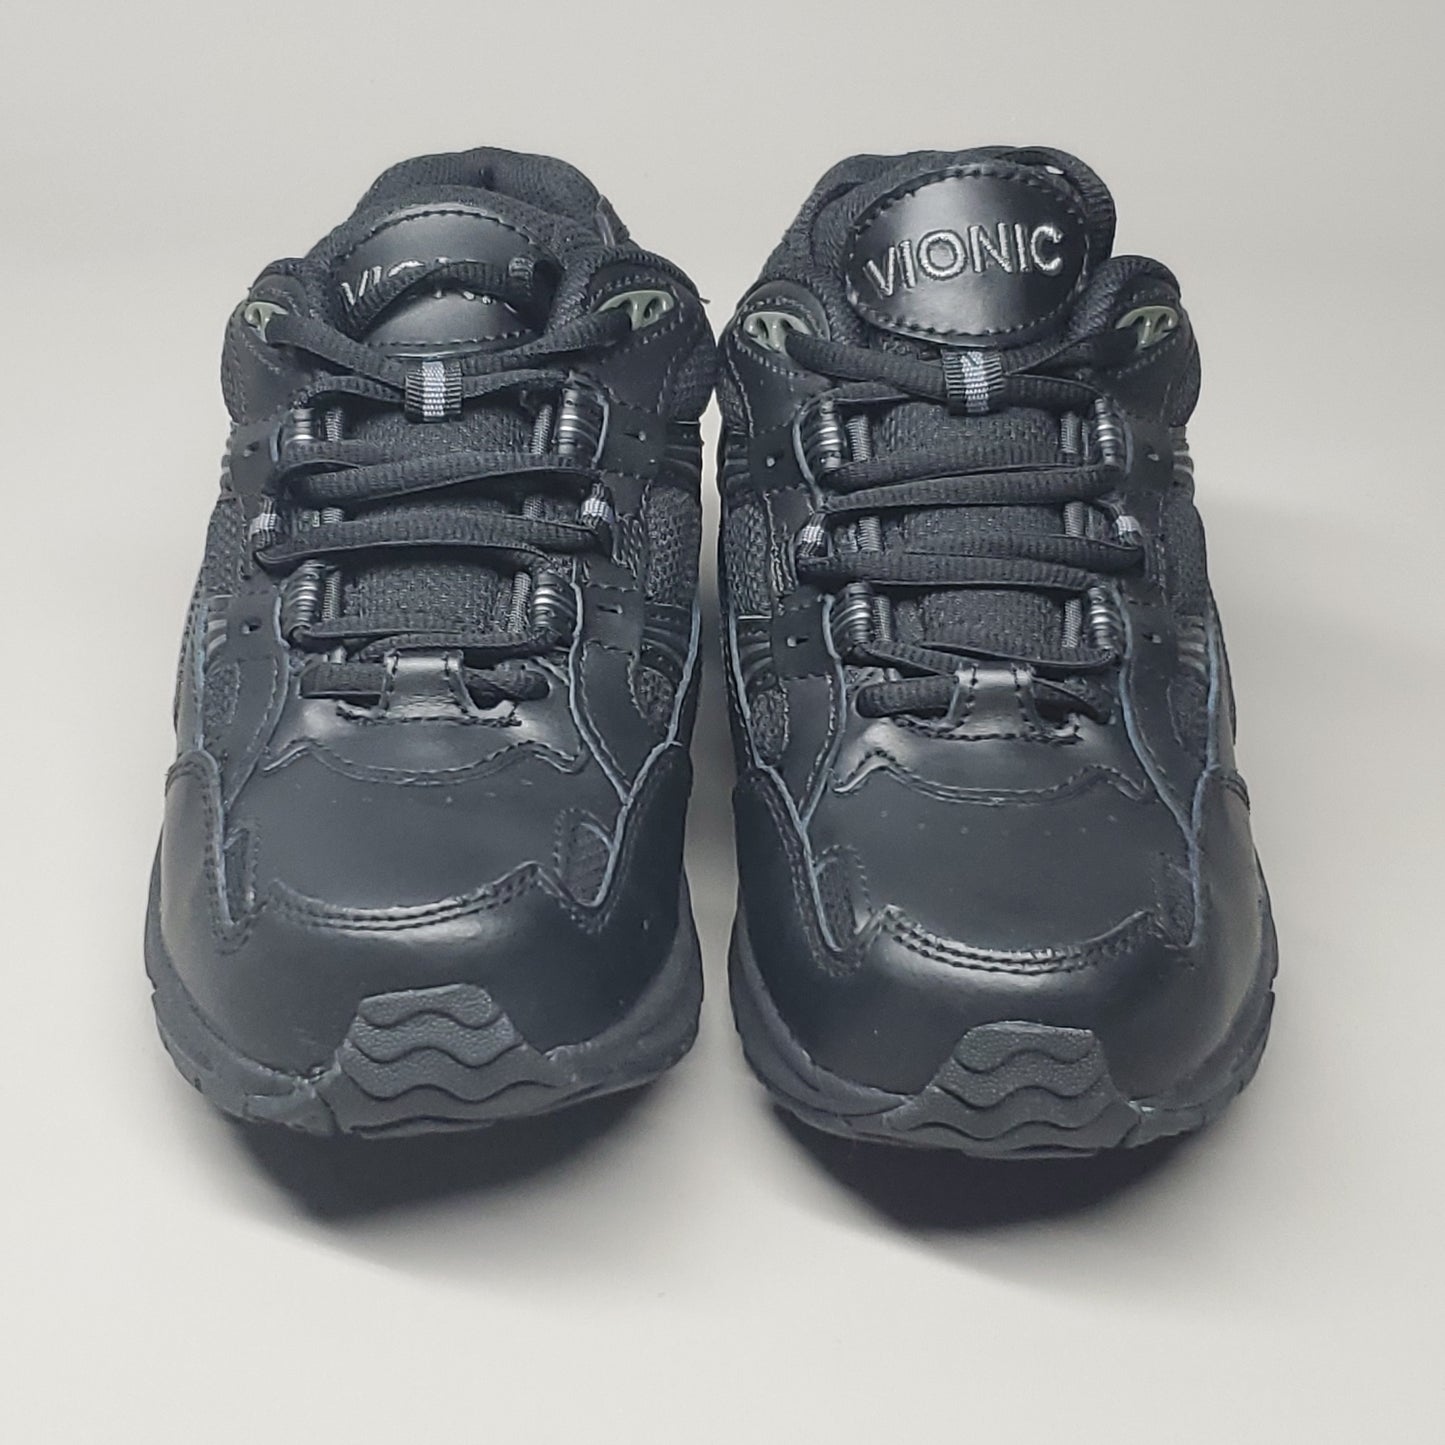 VIONIC Walker Sneaker Shoe Women's Sz 5 Black 23WALK (New)